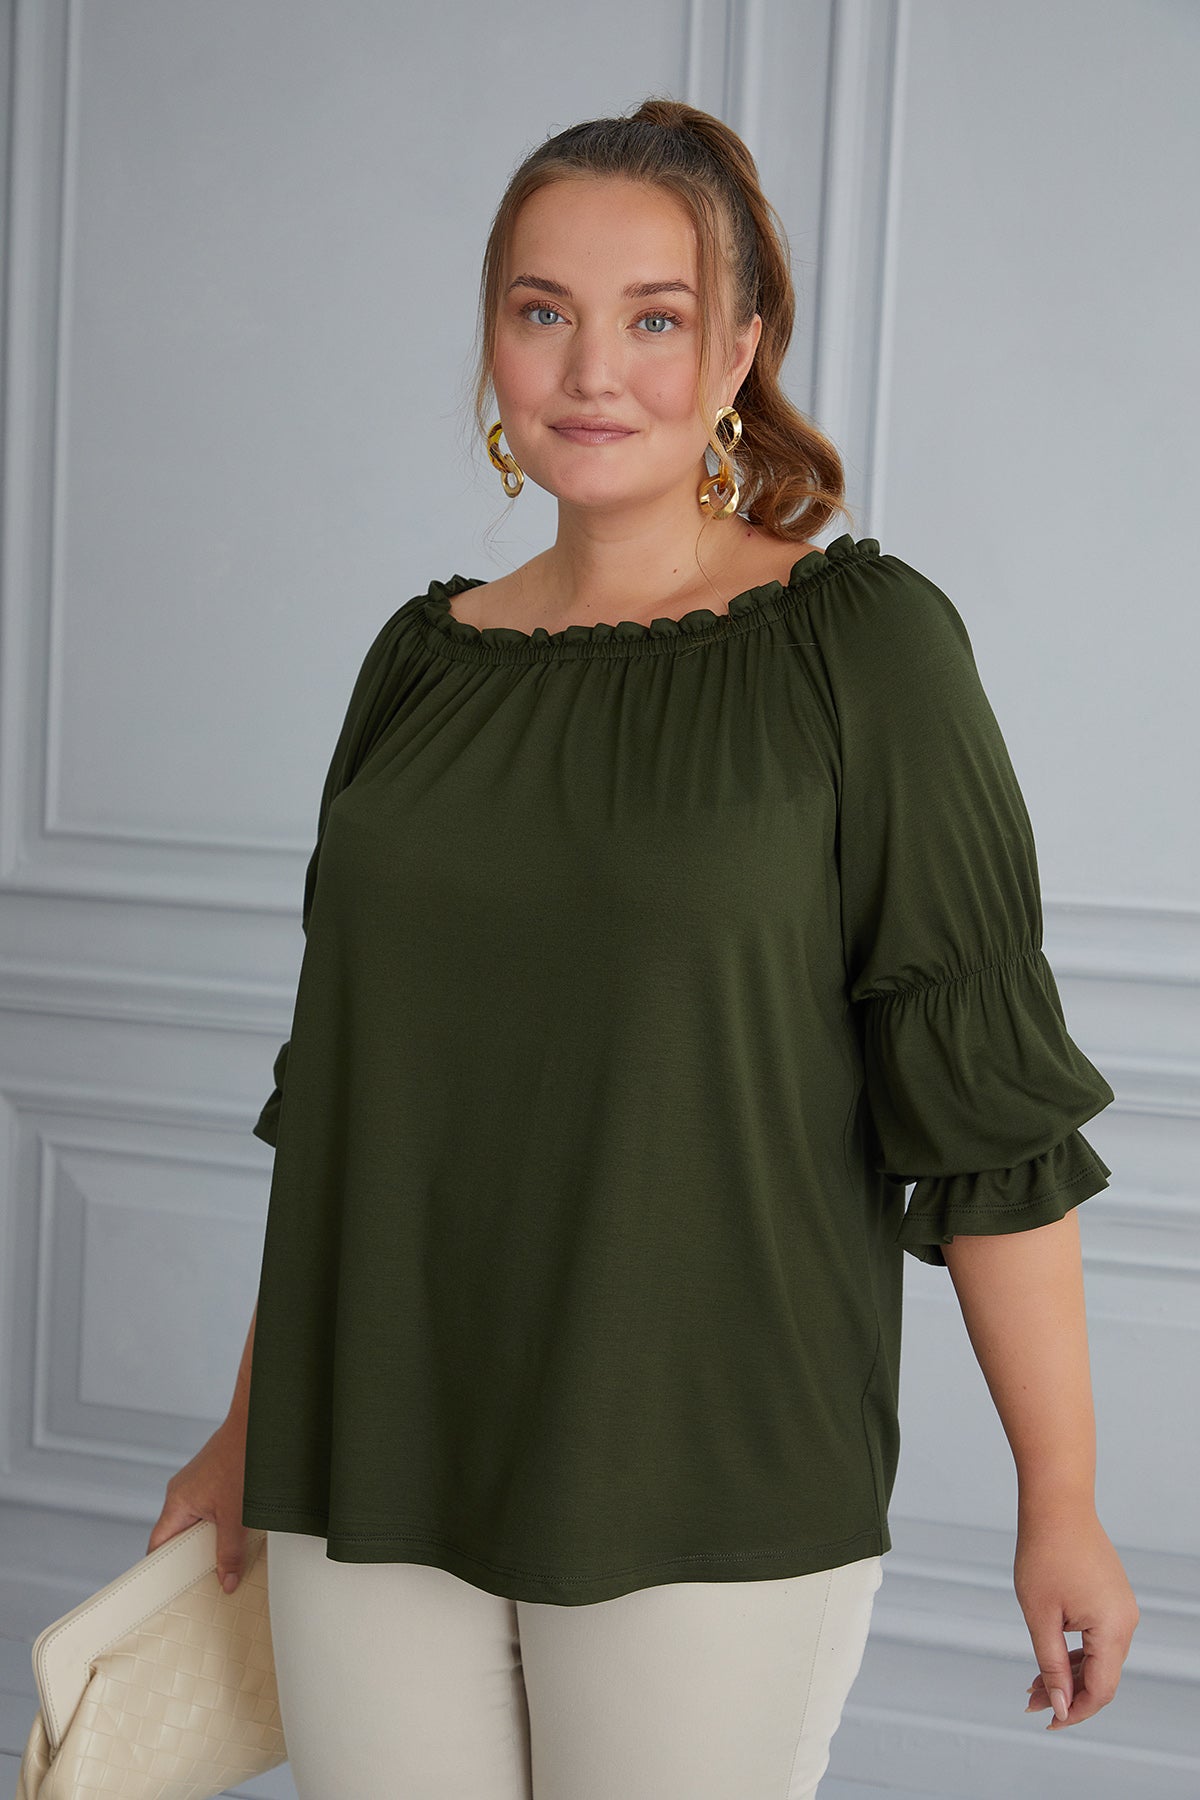 Γυναικεία μπλούζα "Κάρμεν" σε μεγάλα μεγέθη - Πράσινο